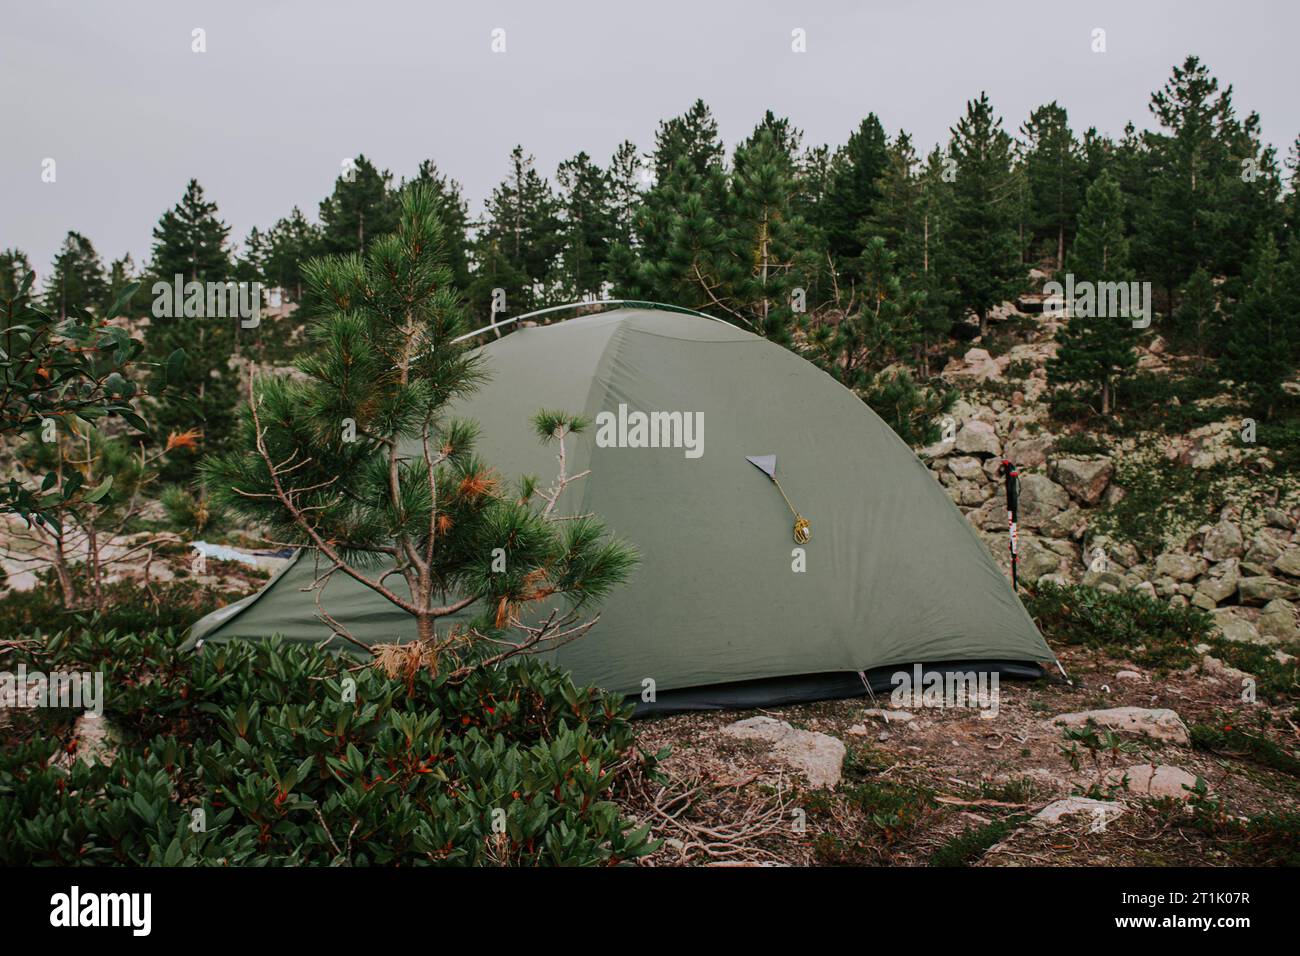 Una verde tenda turistica per tre persone allestita in una foresta circondata da conifere sempreverdi e rocce in una zona montuosa. Campeggiare nella foresta Foto Stock